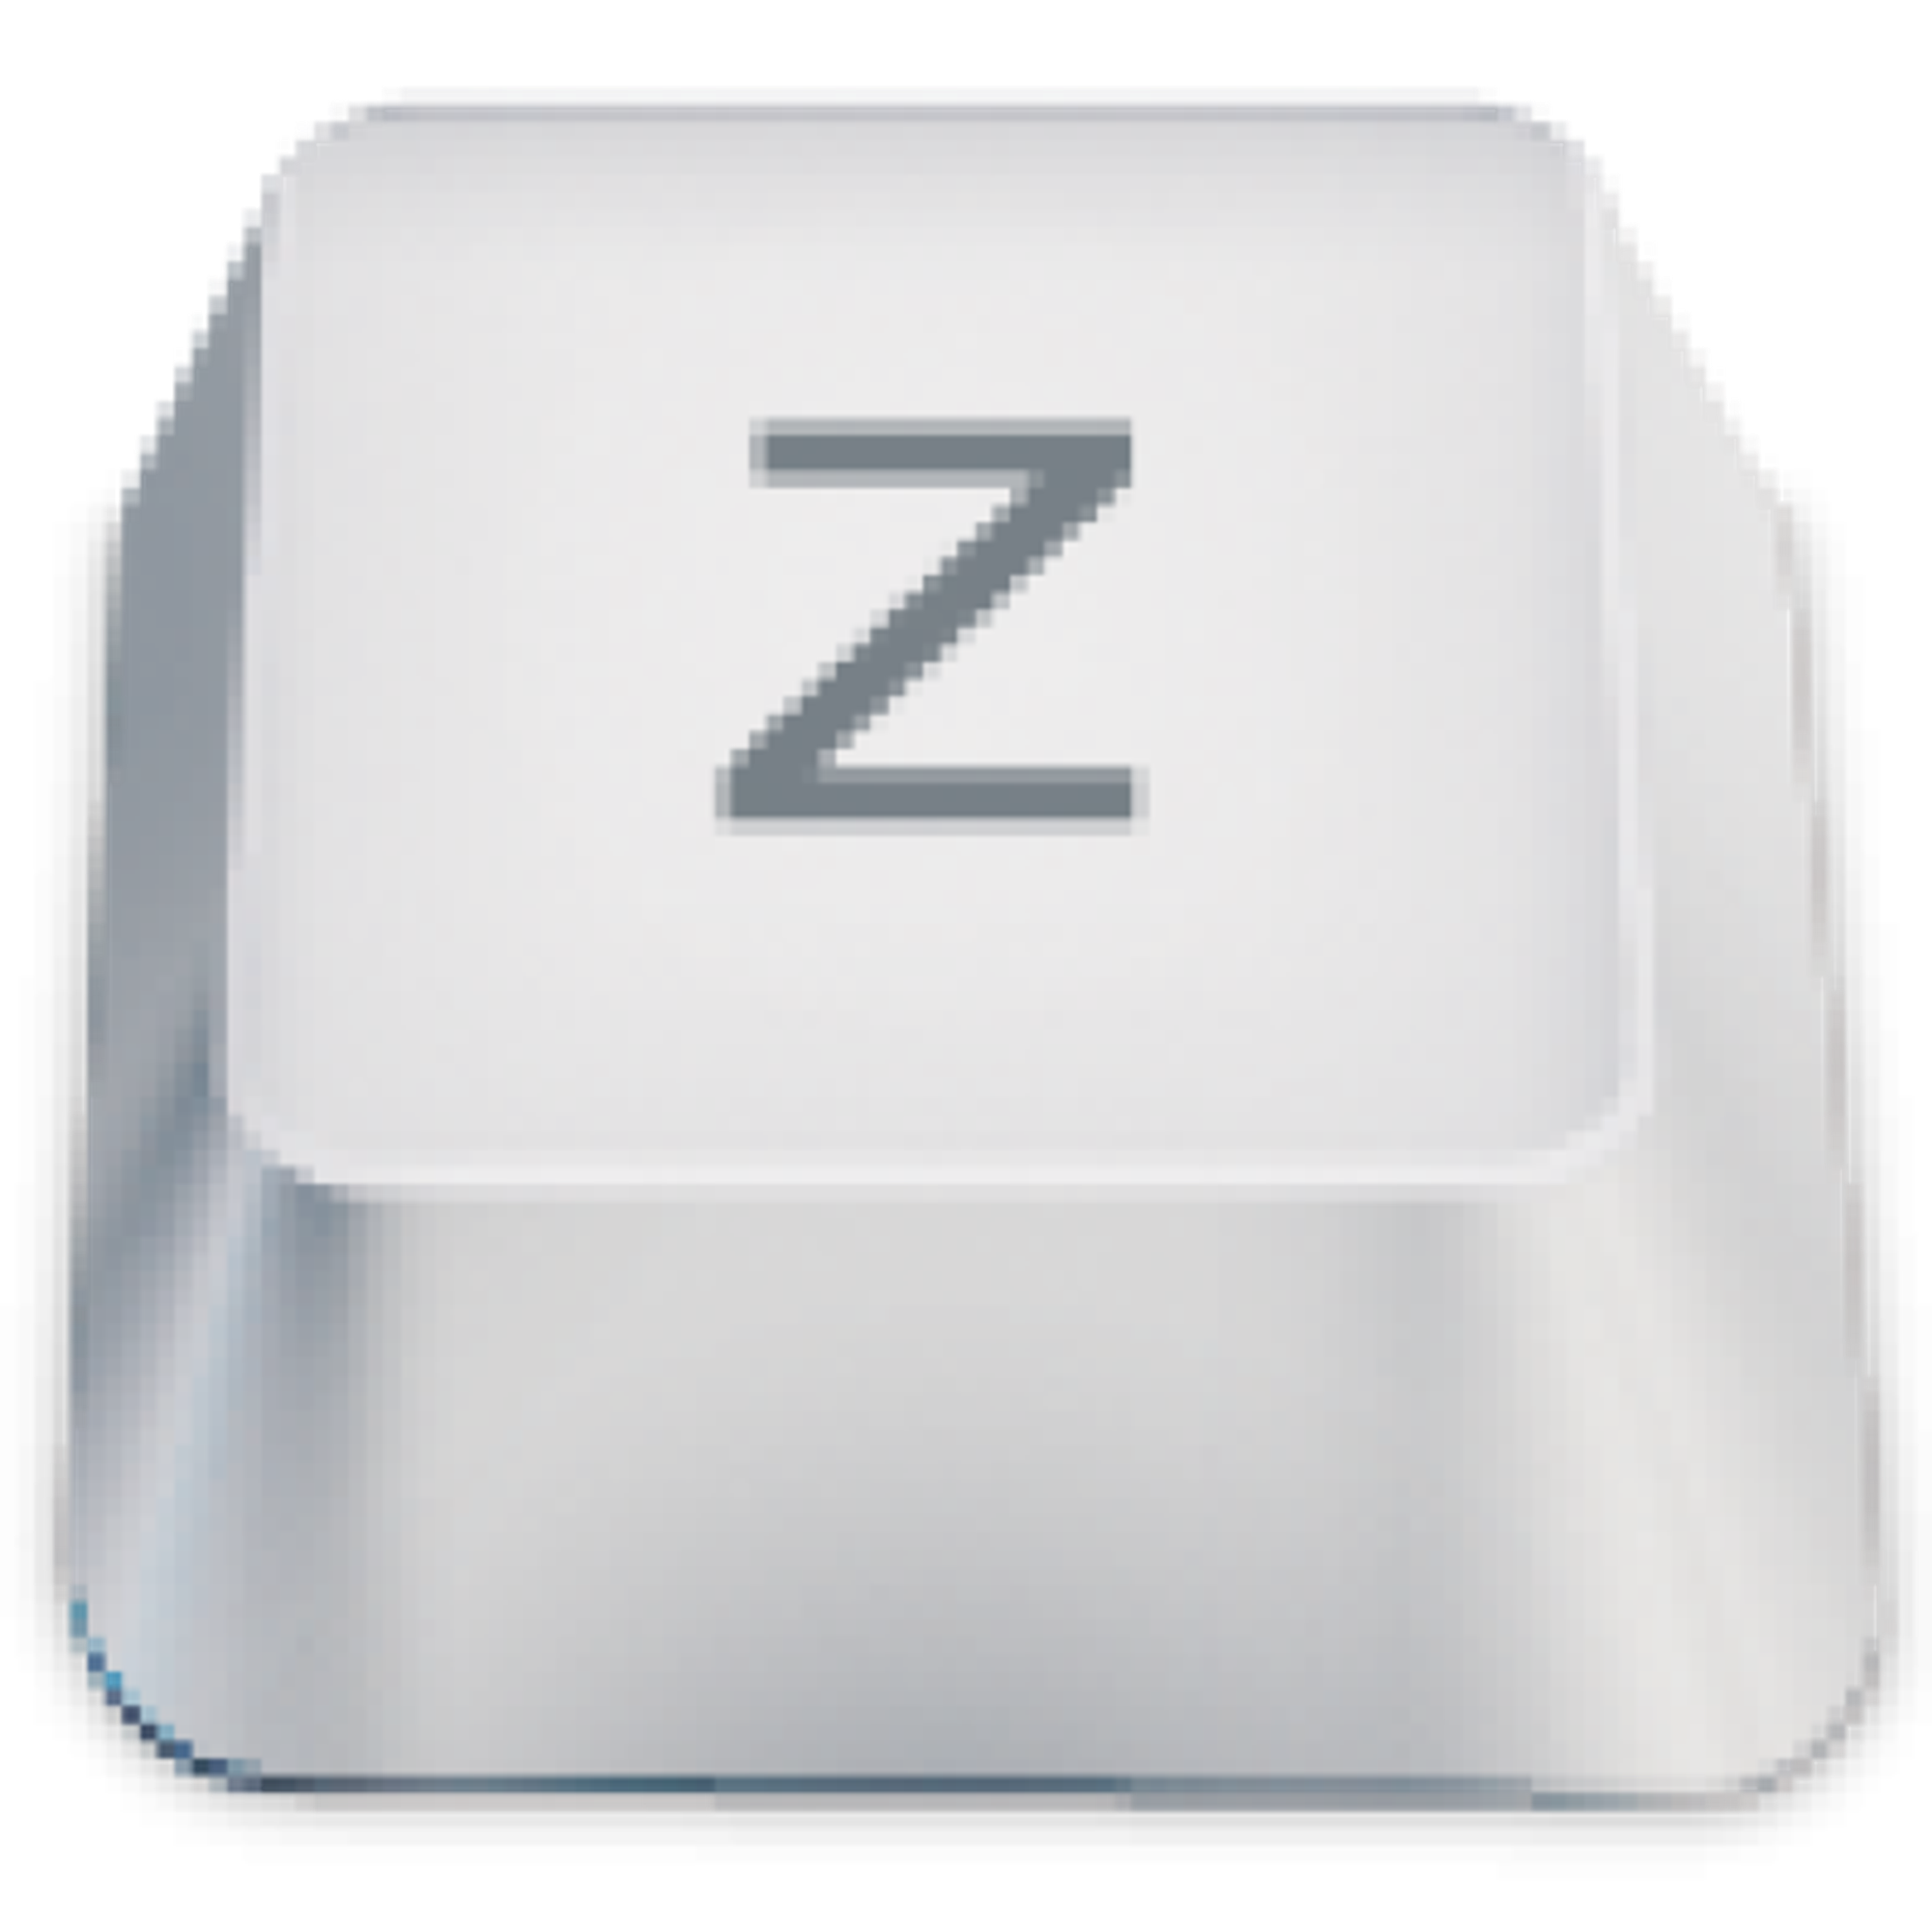 zsh-users/zsh-autosuggestions